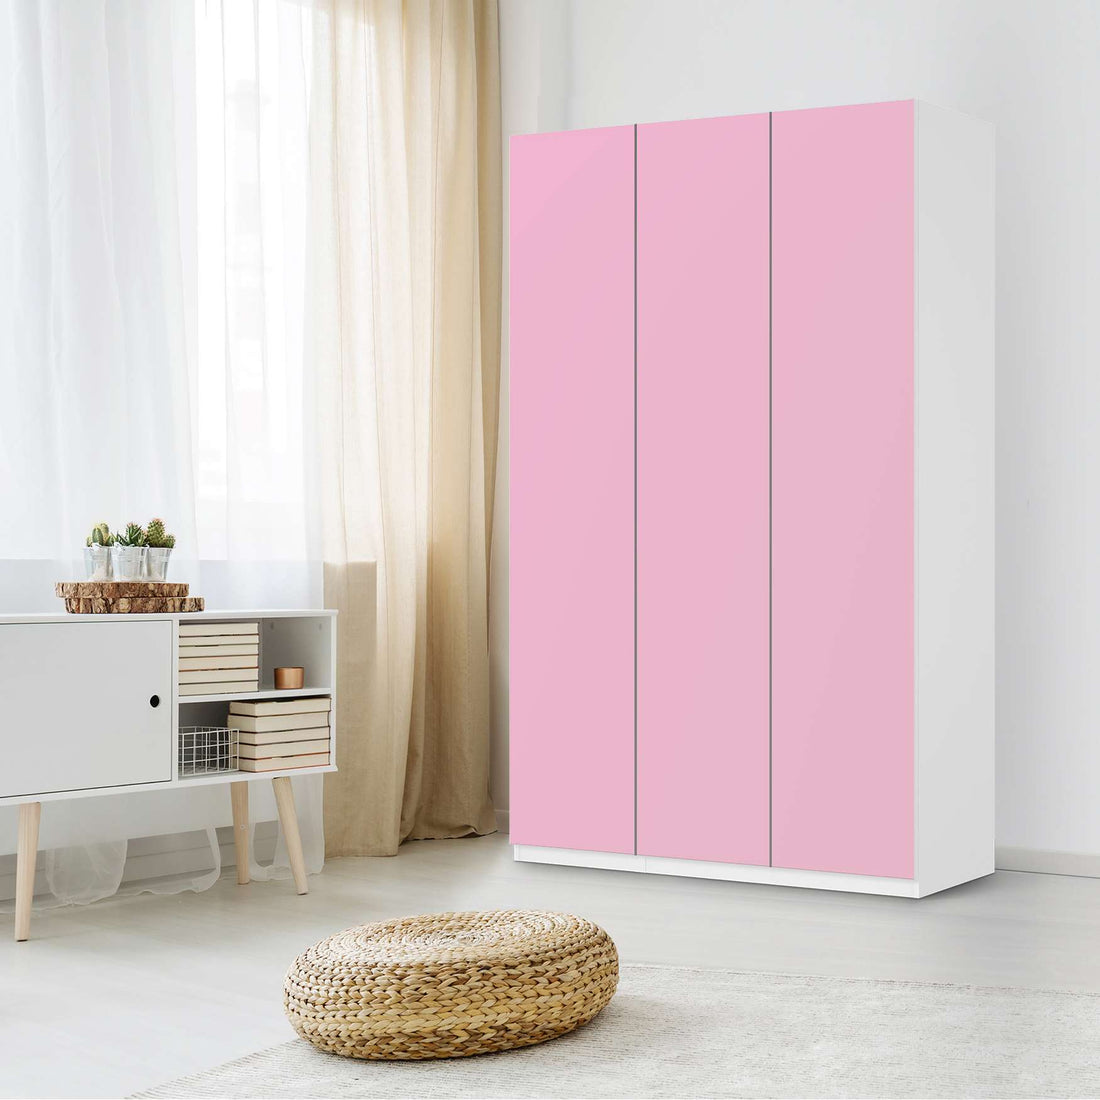 Selbstklebende Folie Pink Light - IKEA Pax Schrank 236 cm Höhe - 3 Türen - Schlafzimmer